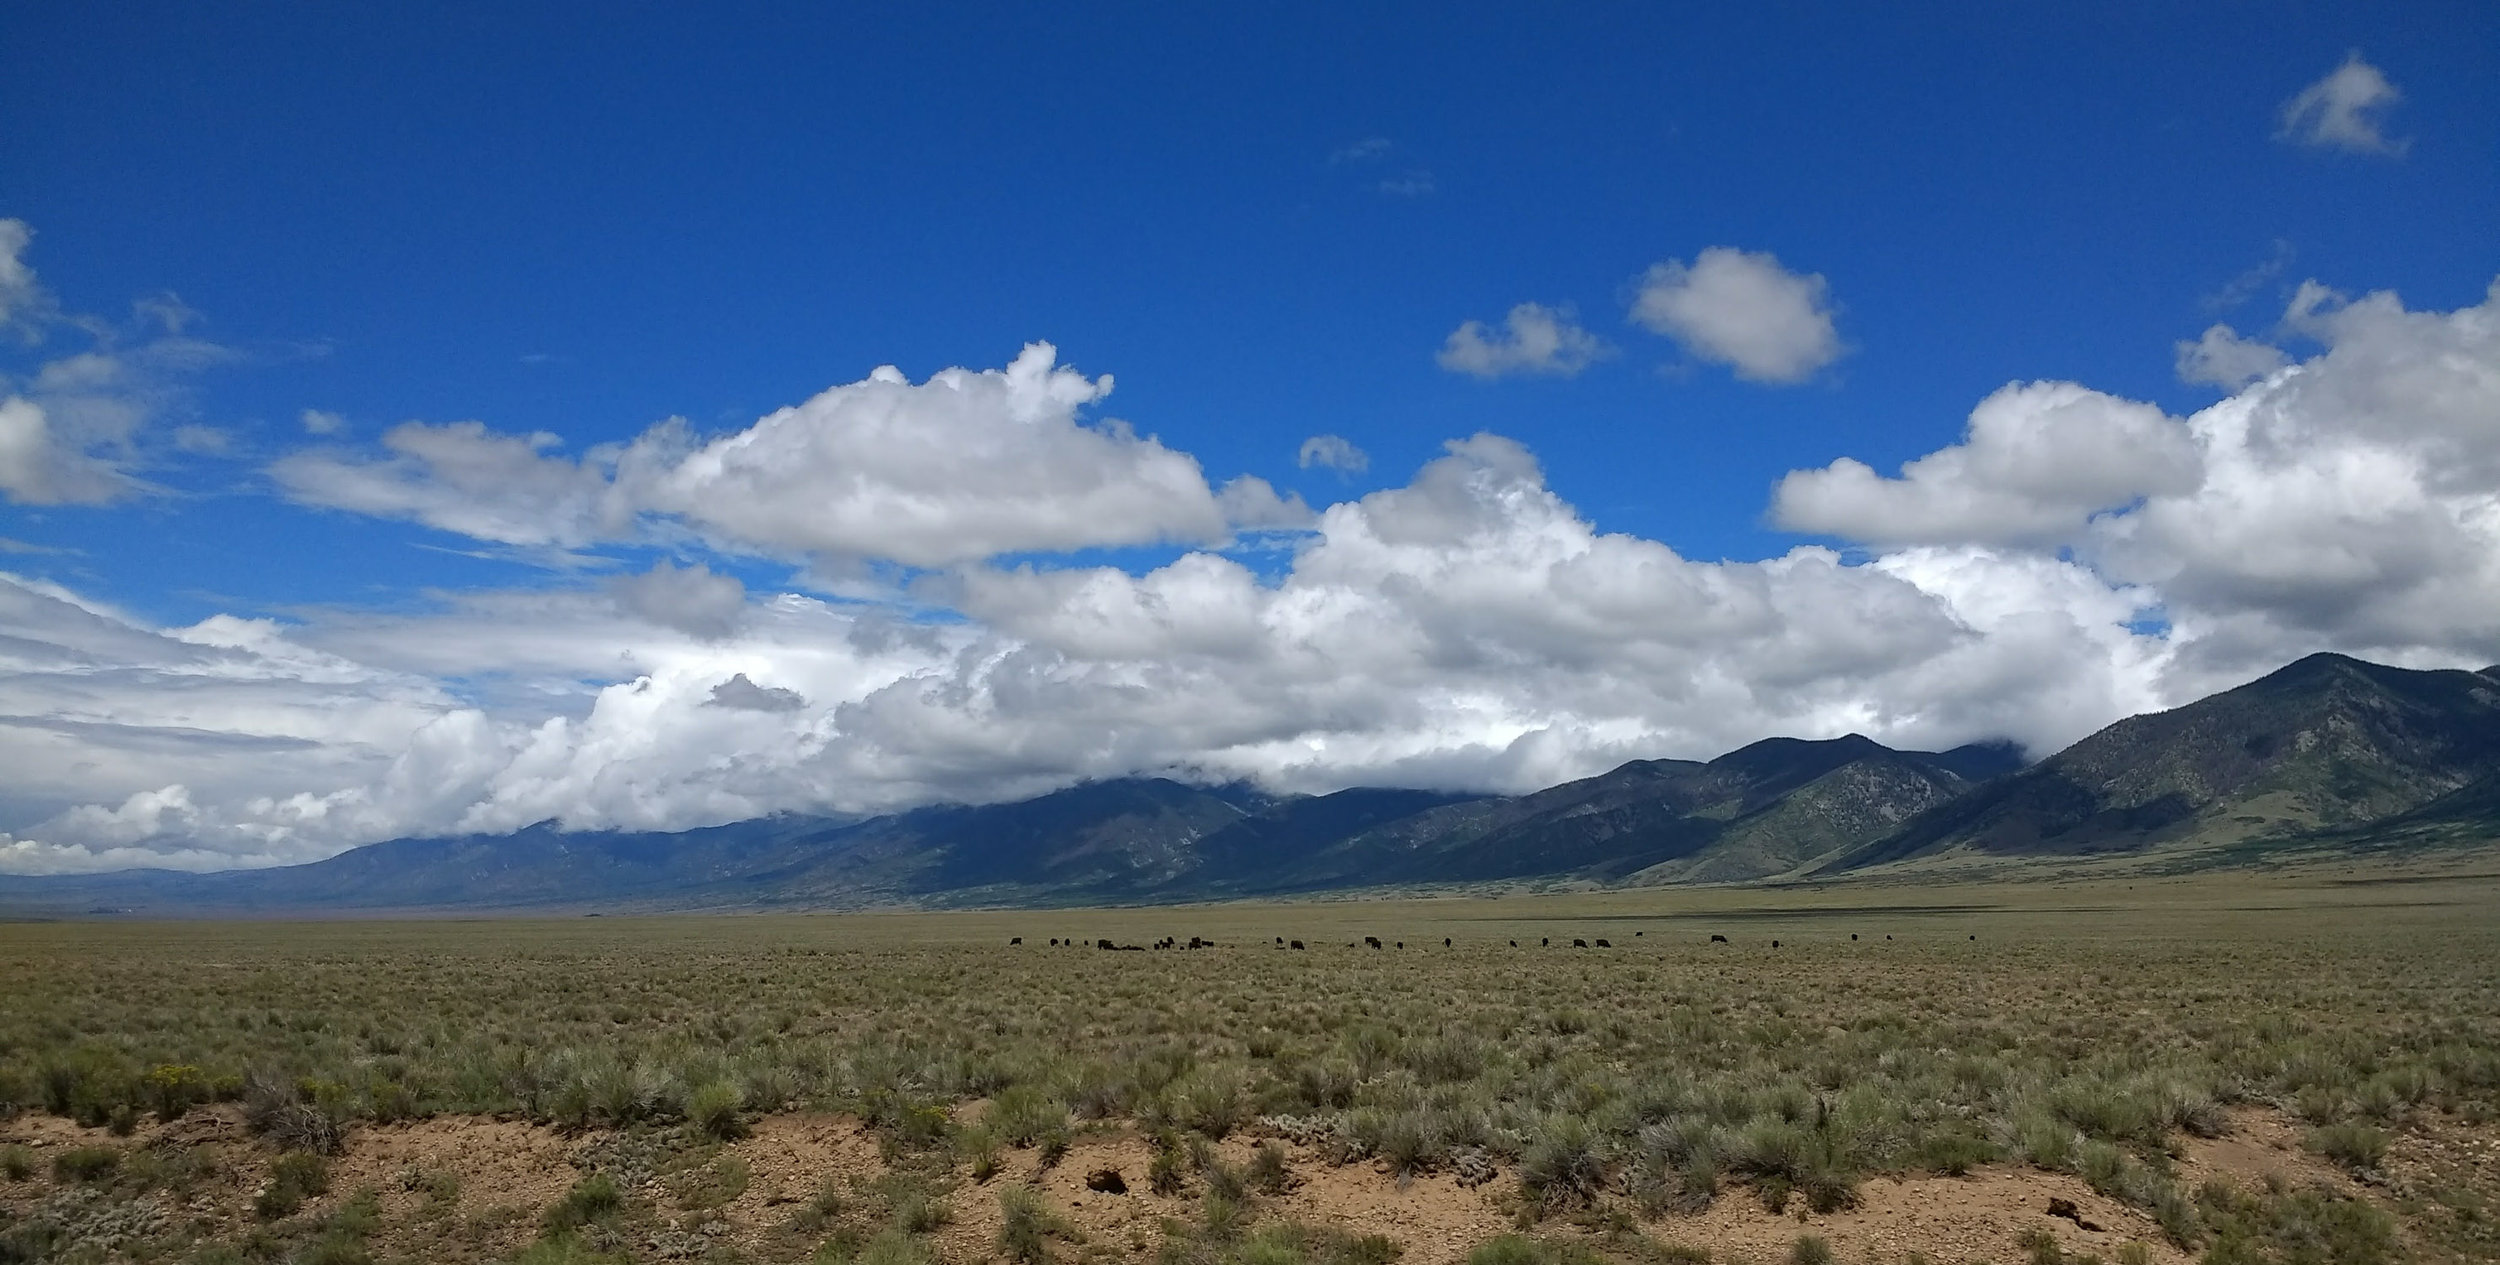  The San Luis Valley of Central Colorado 